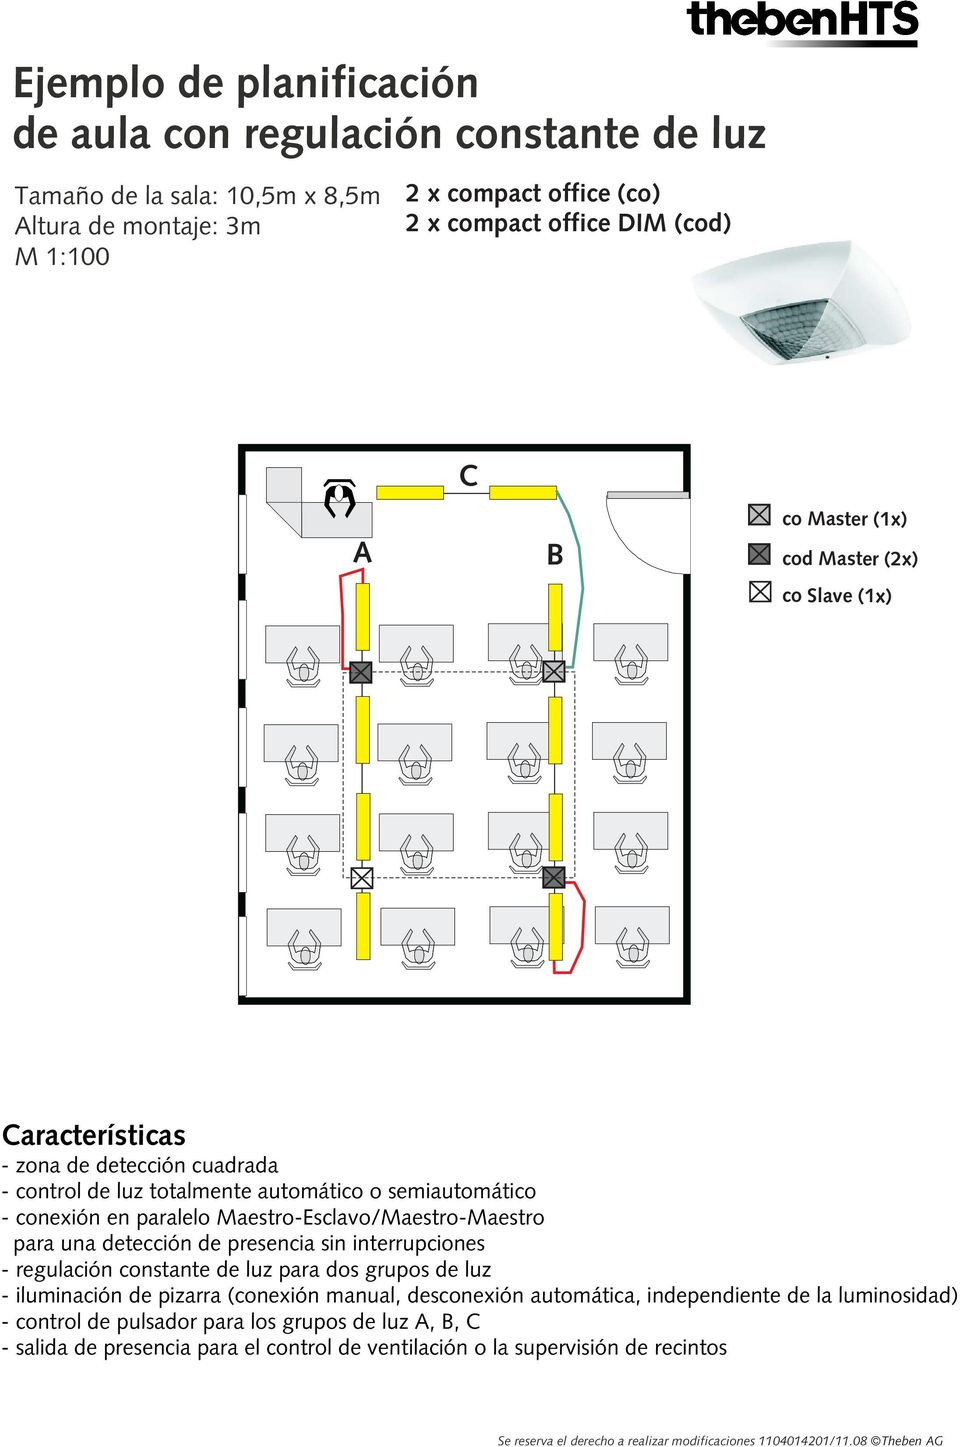 presencia sin interrupciones - regulación constante de luz para dos grupos de luz - iluminación de pizarra (conexión manual, desconexión automática, independiente de la luminosidad) - control